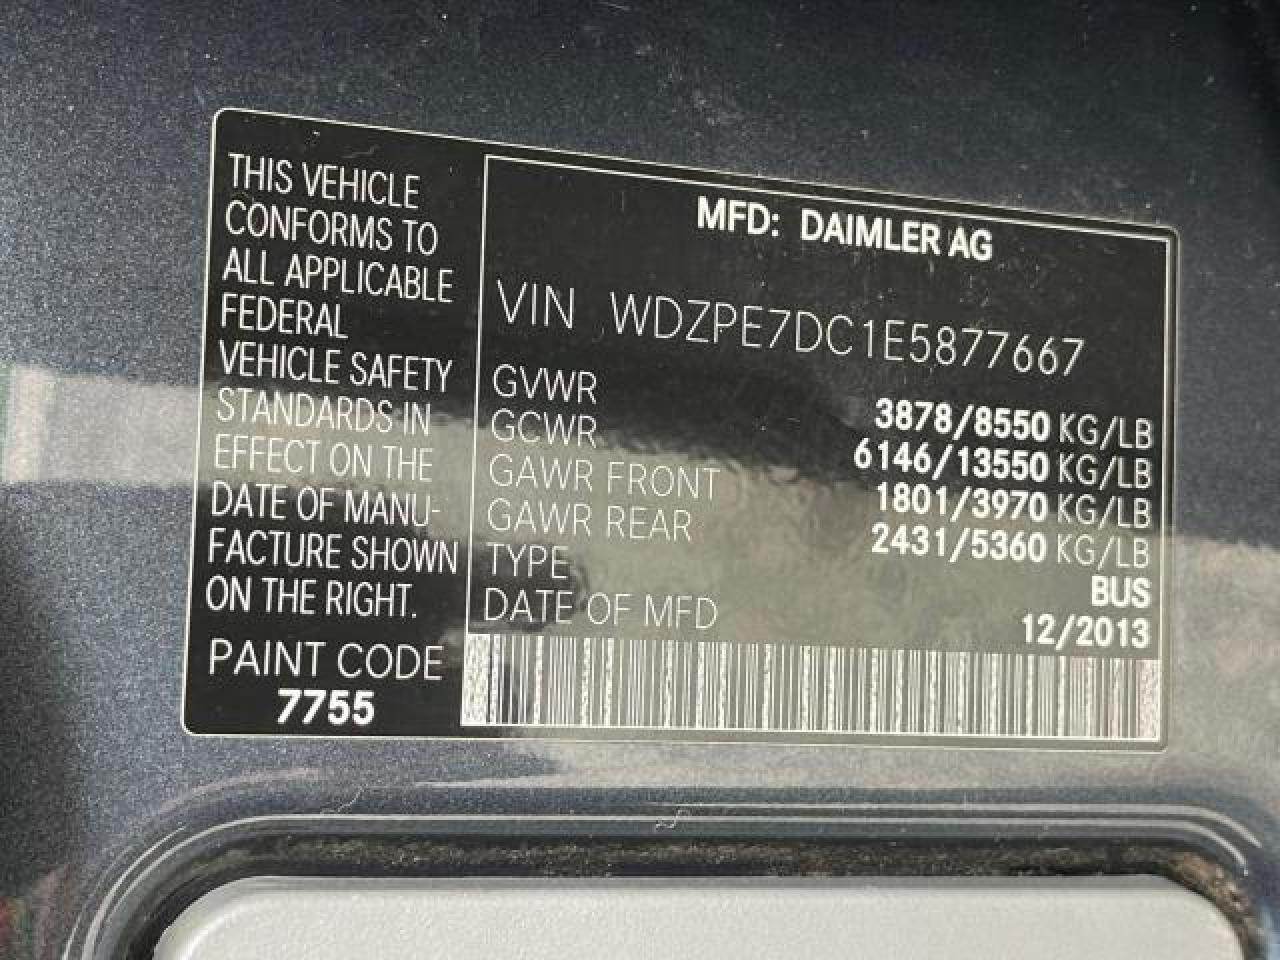 2014 Mercedes-Benz Sprinter 2500 vin: WDZPE7DC1E5877667